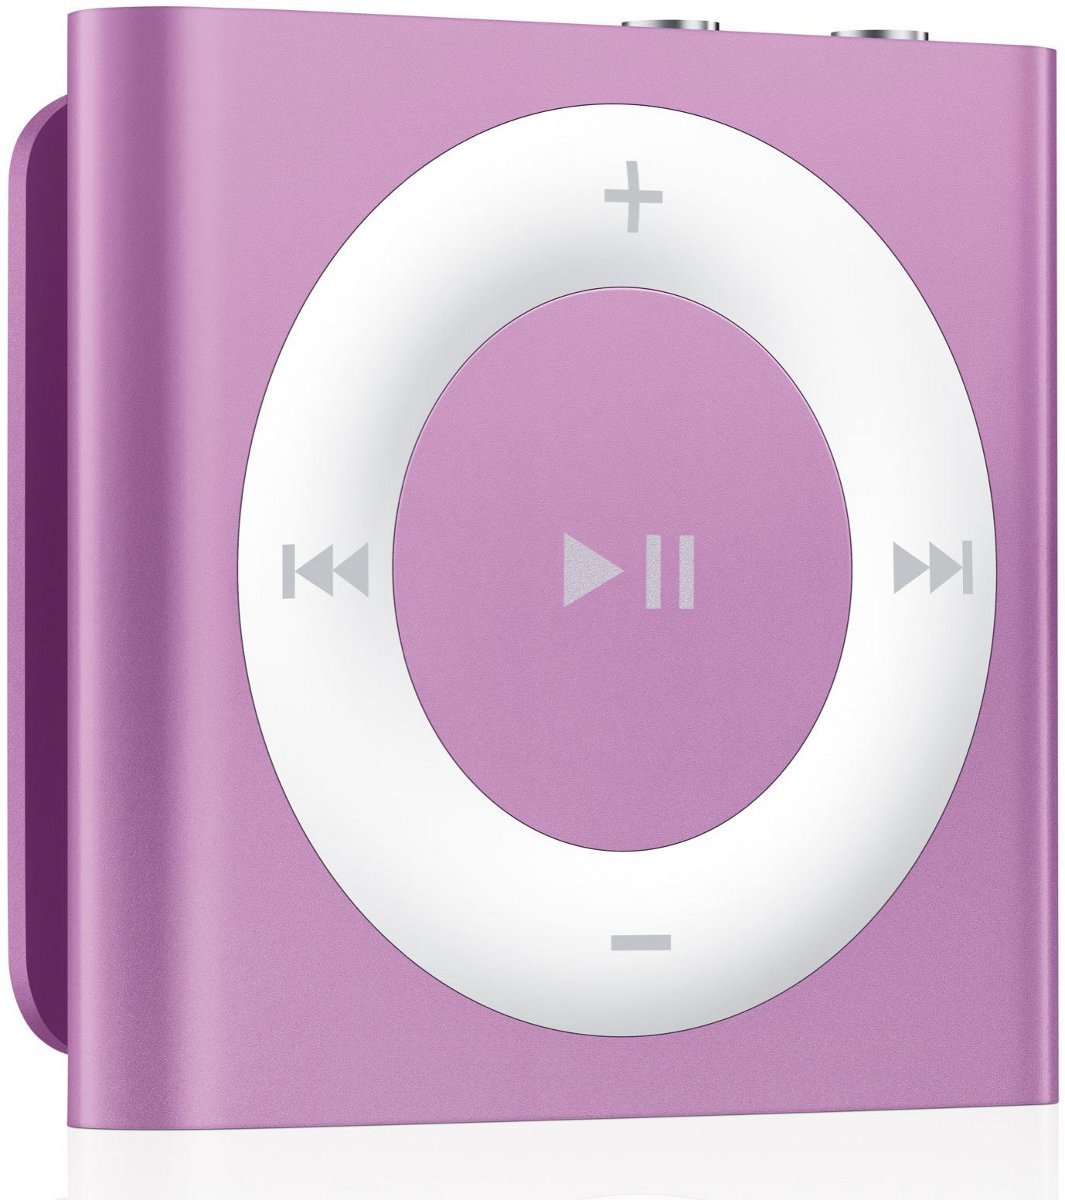 APPLE iPod Shuffle Fioletowy Odtwarzacz MP3 - niskie ceny i opinie w Media  Expert